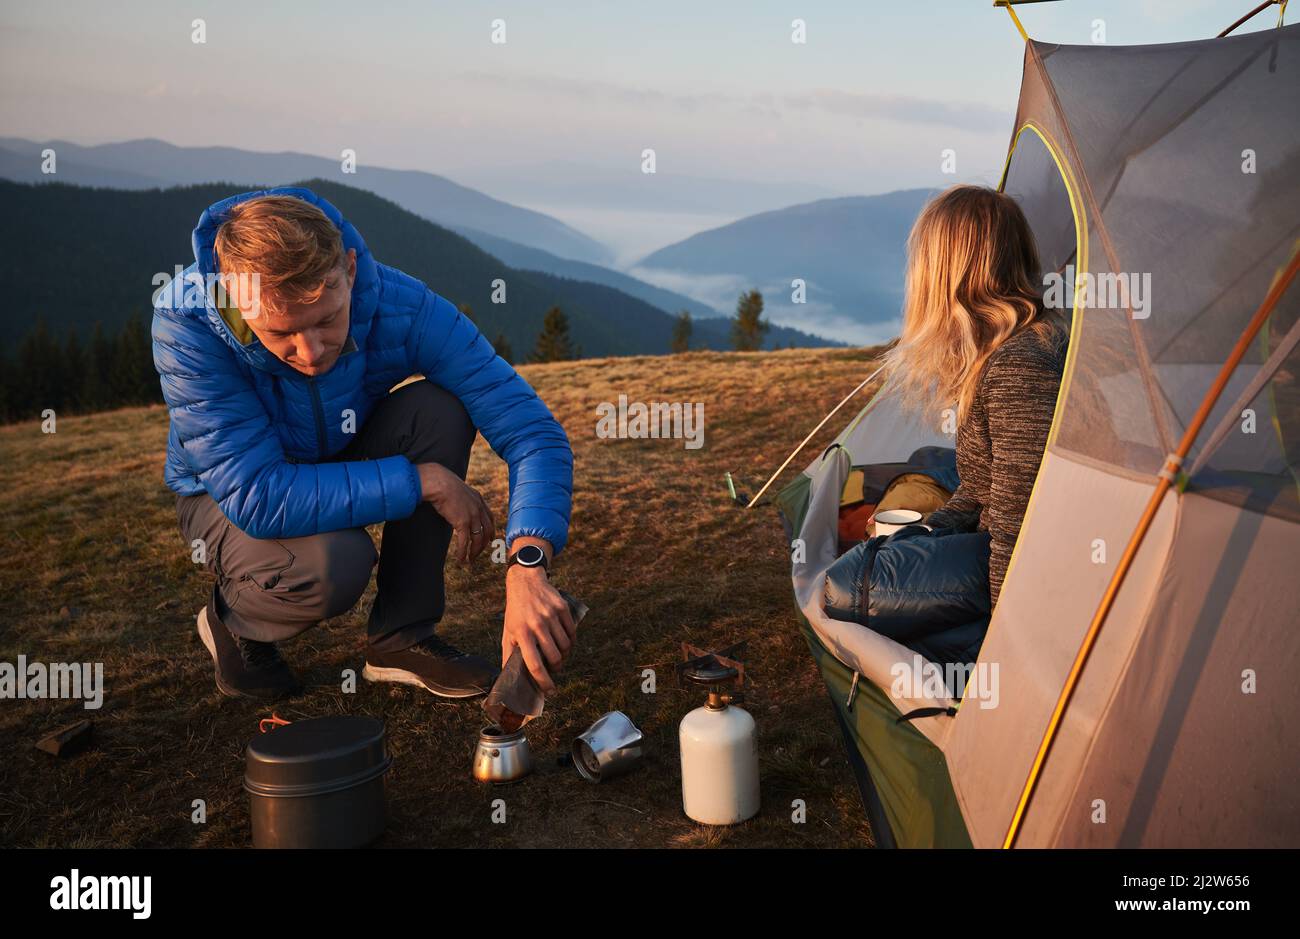 Mattina in estate tenda accampamento all'aria fresca. Uomo che prepara la colazione per la sua ragazza. Nebbia mattutina sulle colline di montagna sullo sfondo. Concetto di escursioni, campeggio e relazioni. Foto Stock